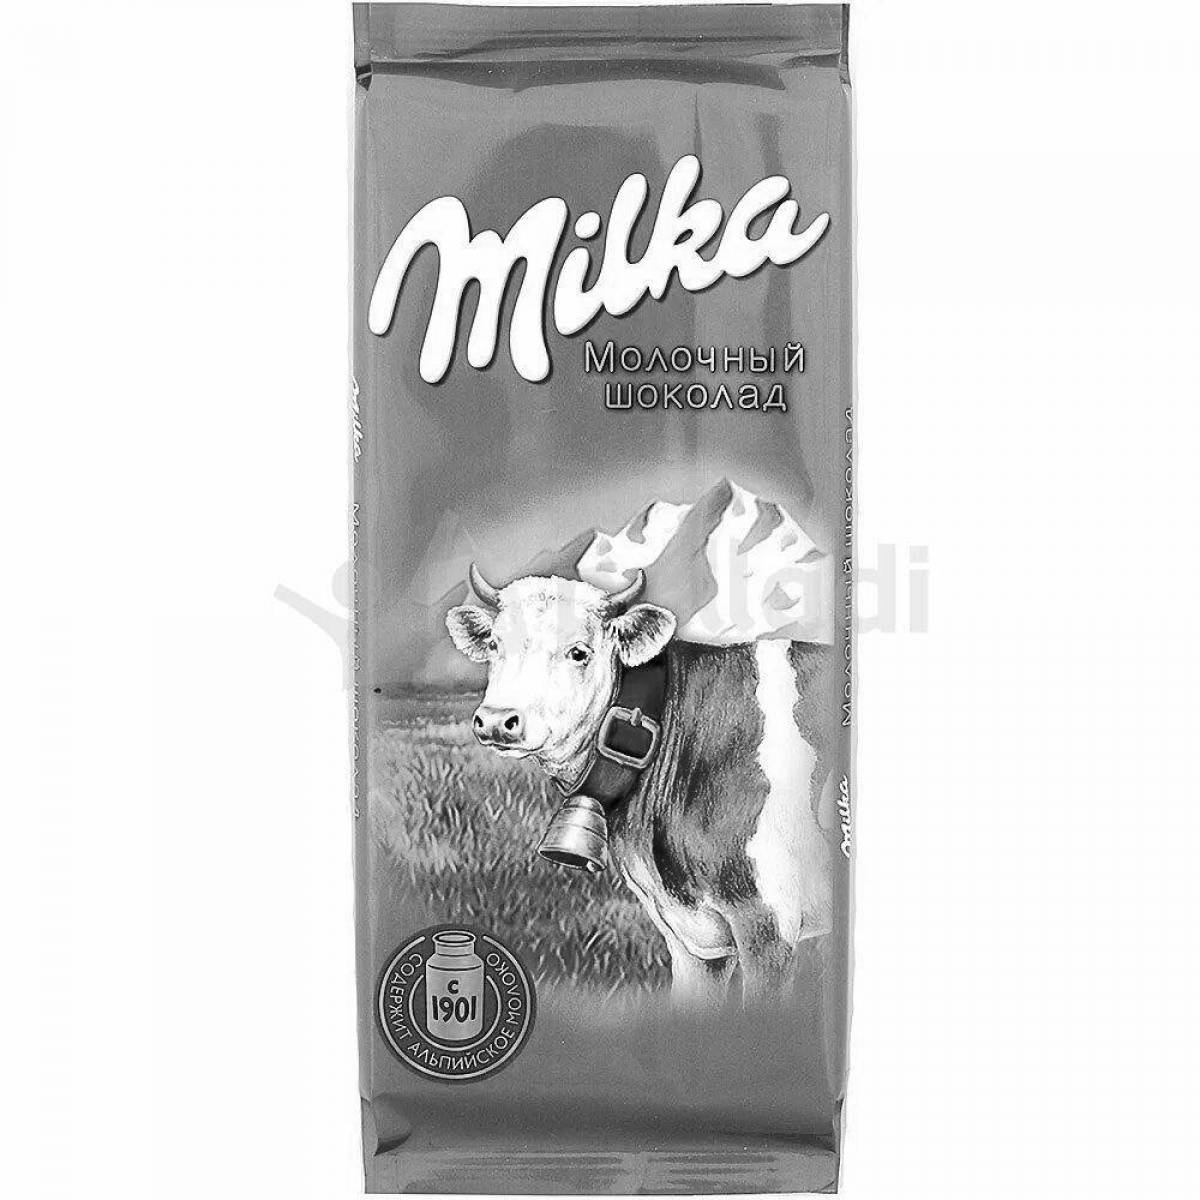 Milka chocolate #10